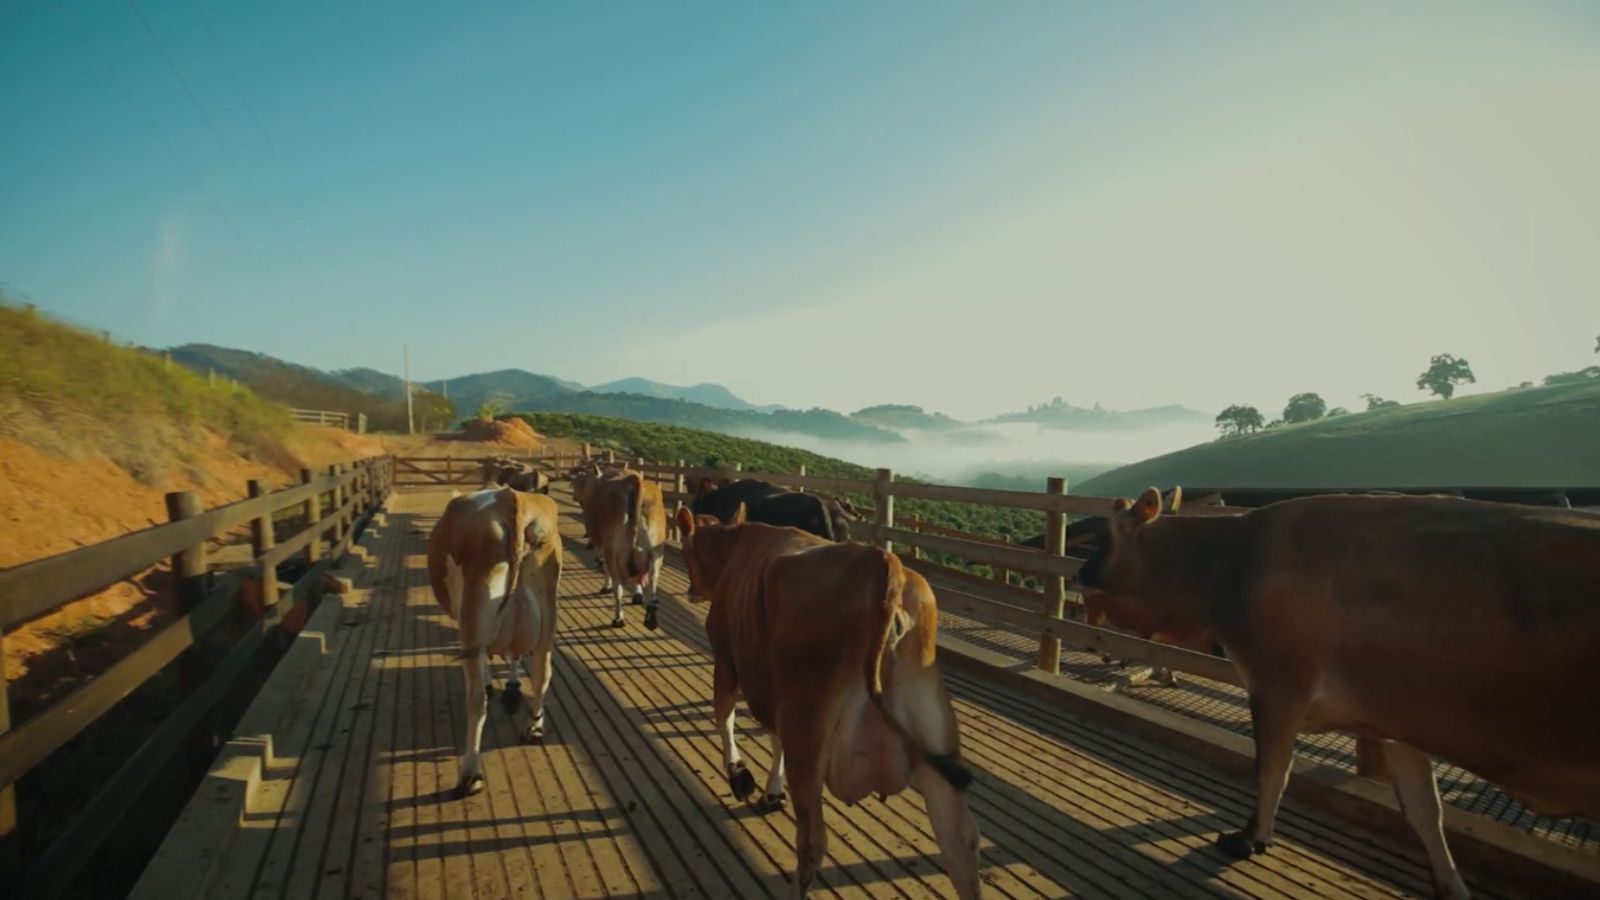 Gado Jersey: qual raça de touro para cruzar e garantir uma boa genética leiteira?